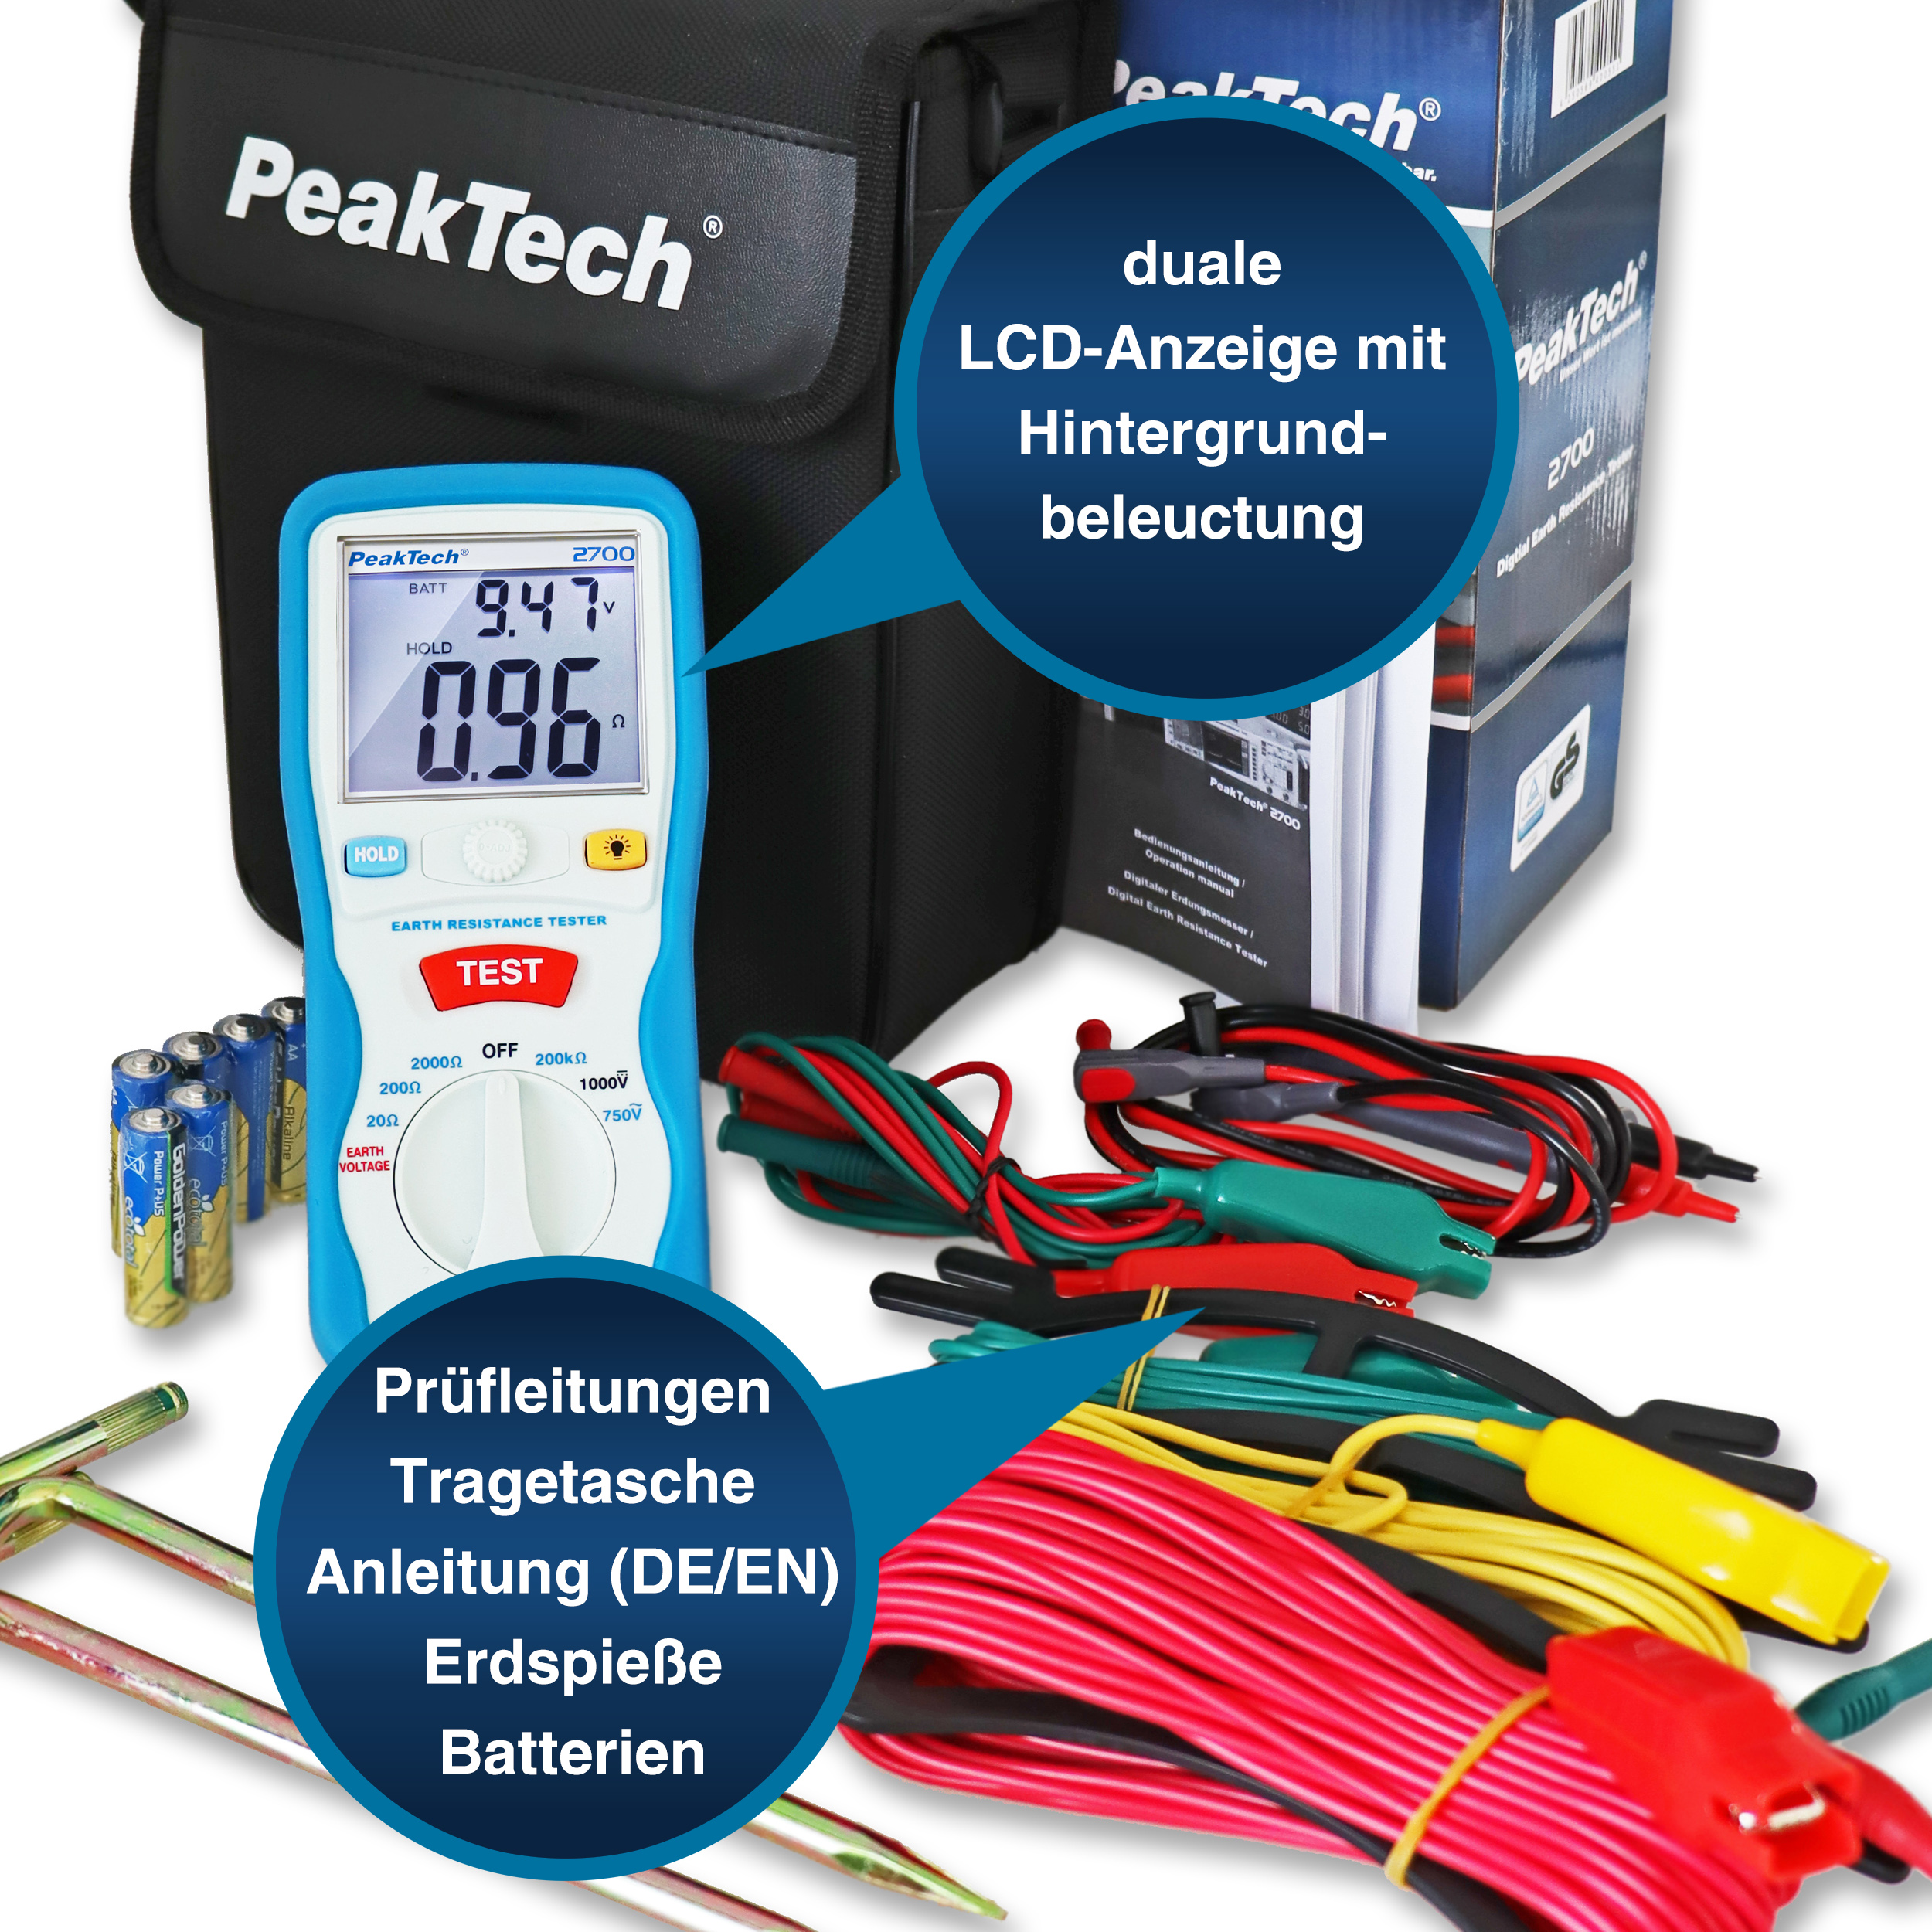 «PeakTech® P 2700» Digital earth tester, 0-2000Ω, CAT III 1000V